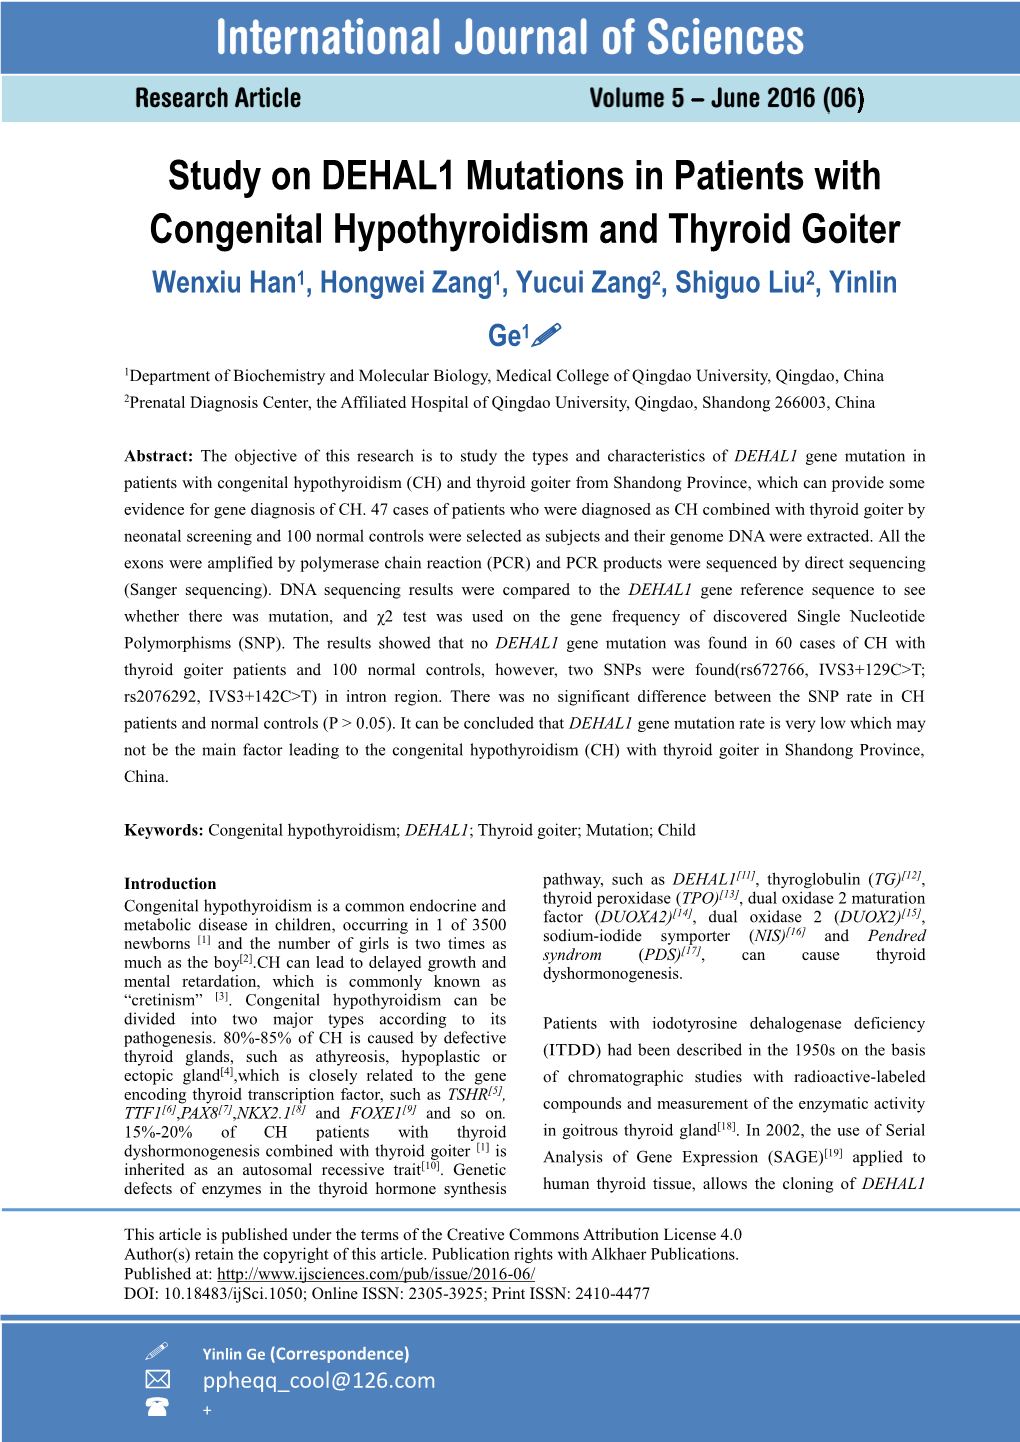 Study on DEHAL1 Mutations in Patients with Congenital Hypothyroidism and Thyroid Goiter Wenxiu Han1, Hongwei Zang1, Yucui Zang2, Shiguo Liu2, Yinlin